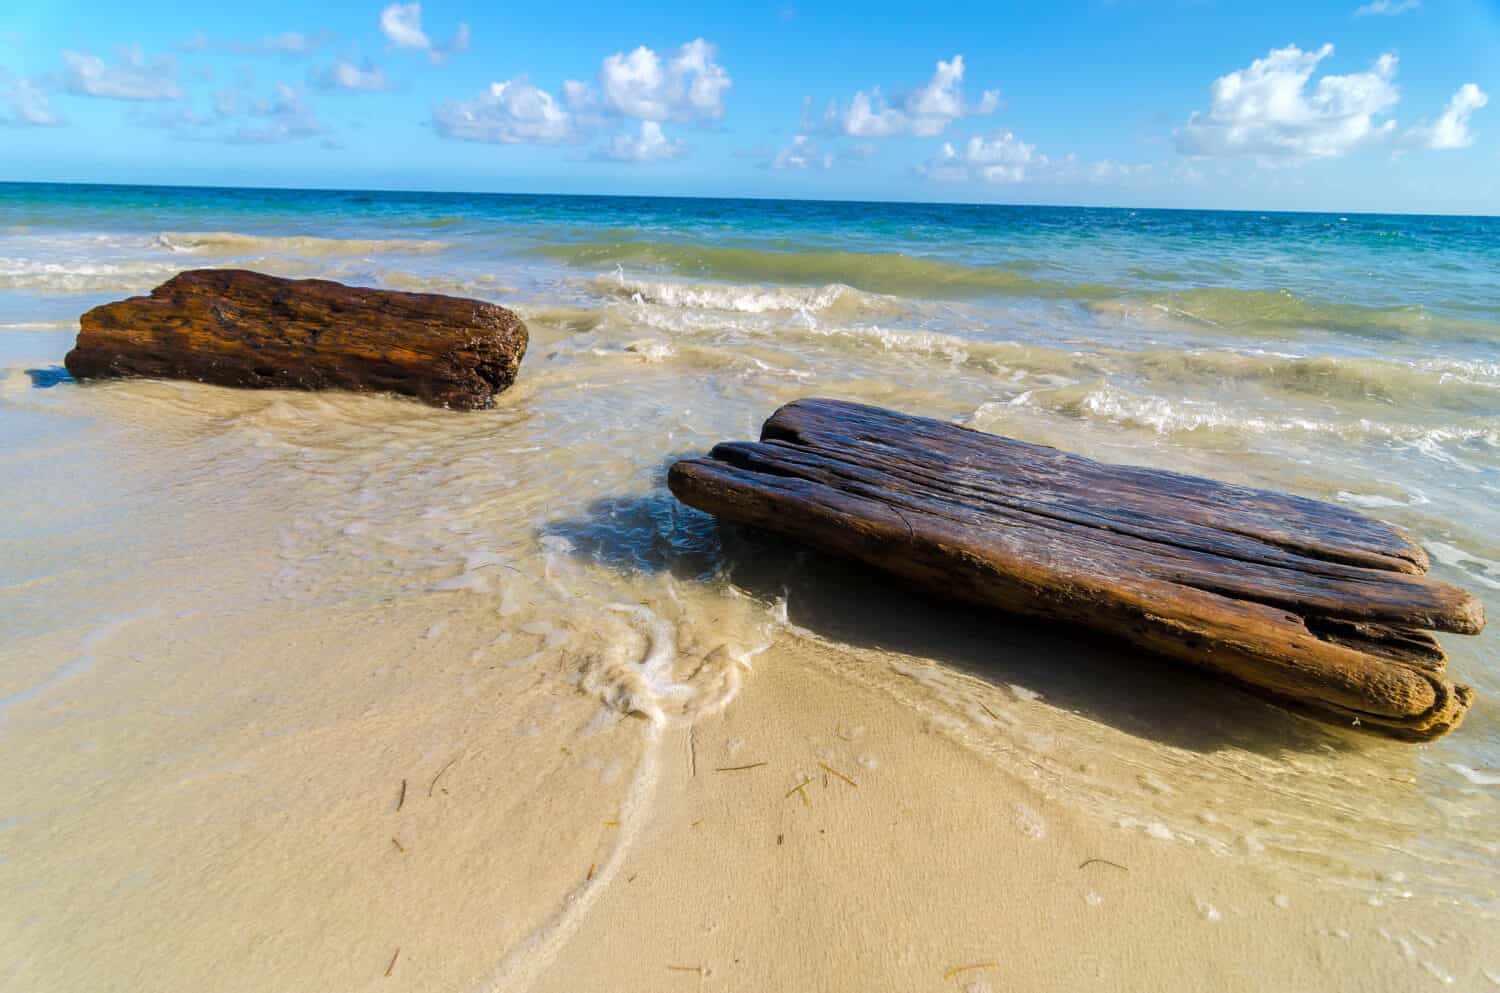 Driftwood lavaggio fino a riva di una spiaggia caraibica tropicale